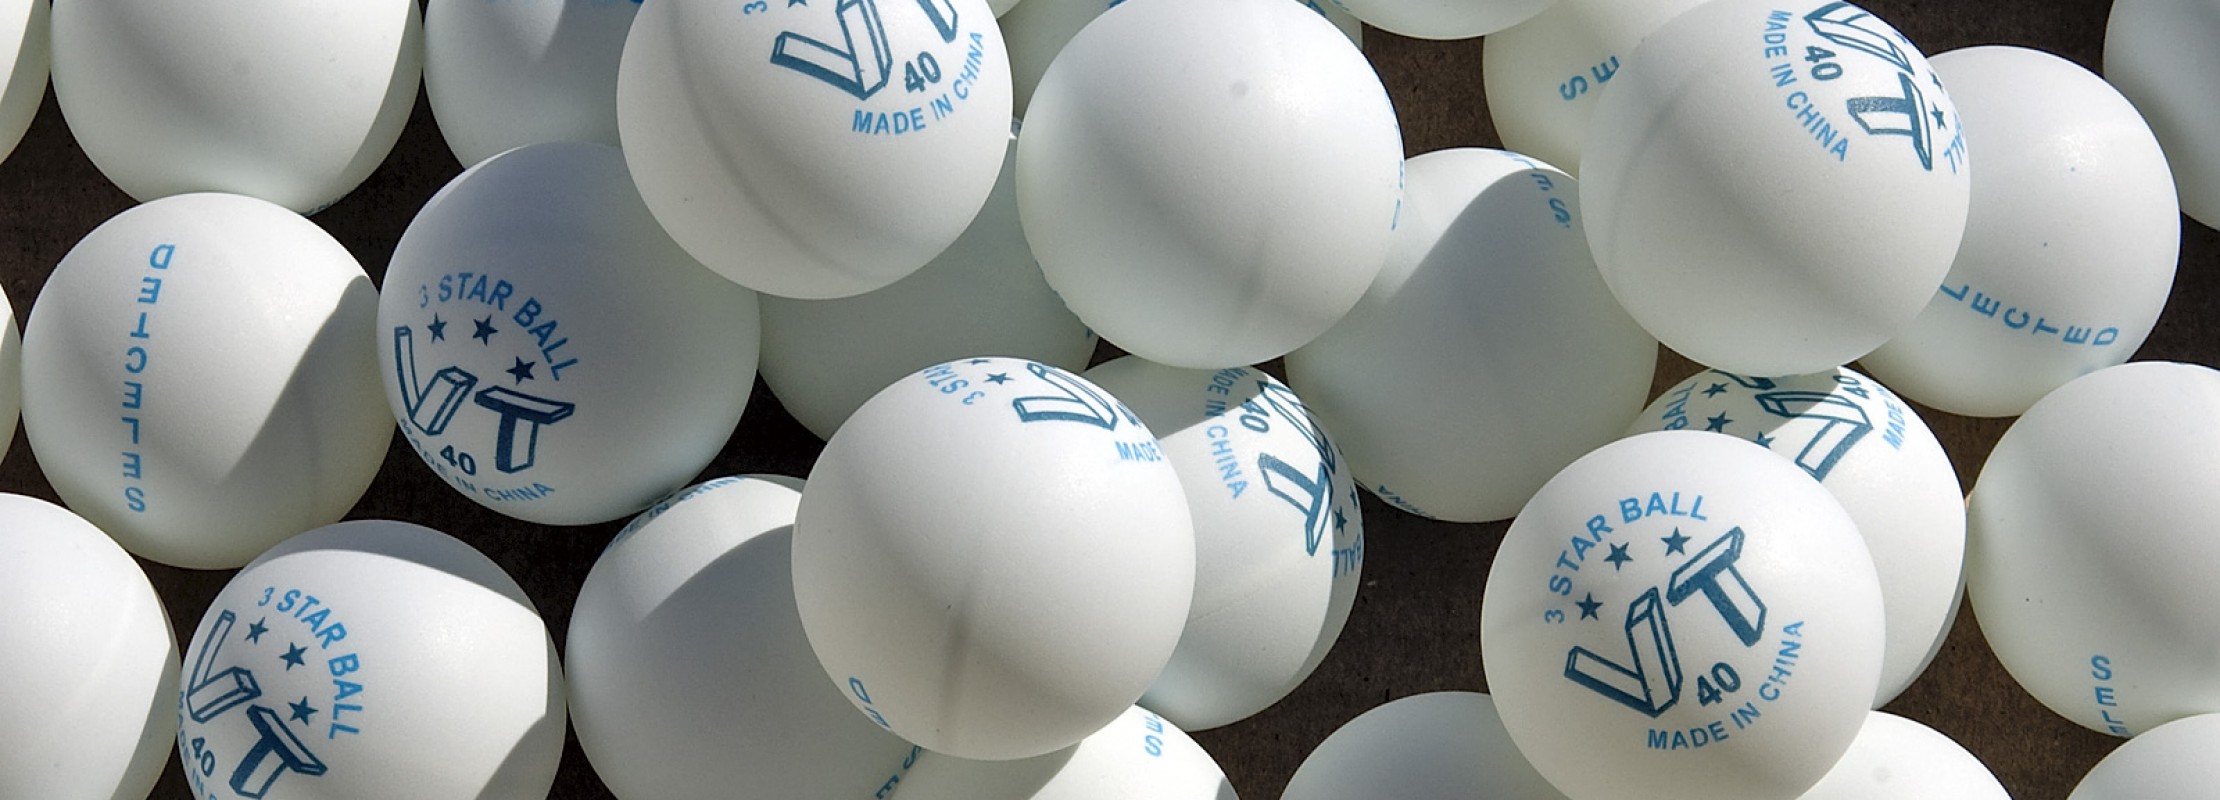 Теннисные шарики в попу: 1000 роликов по теме